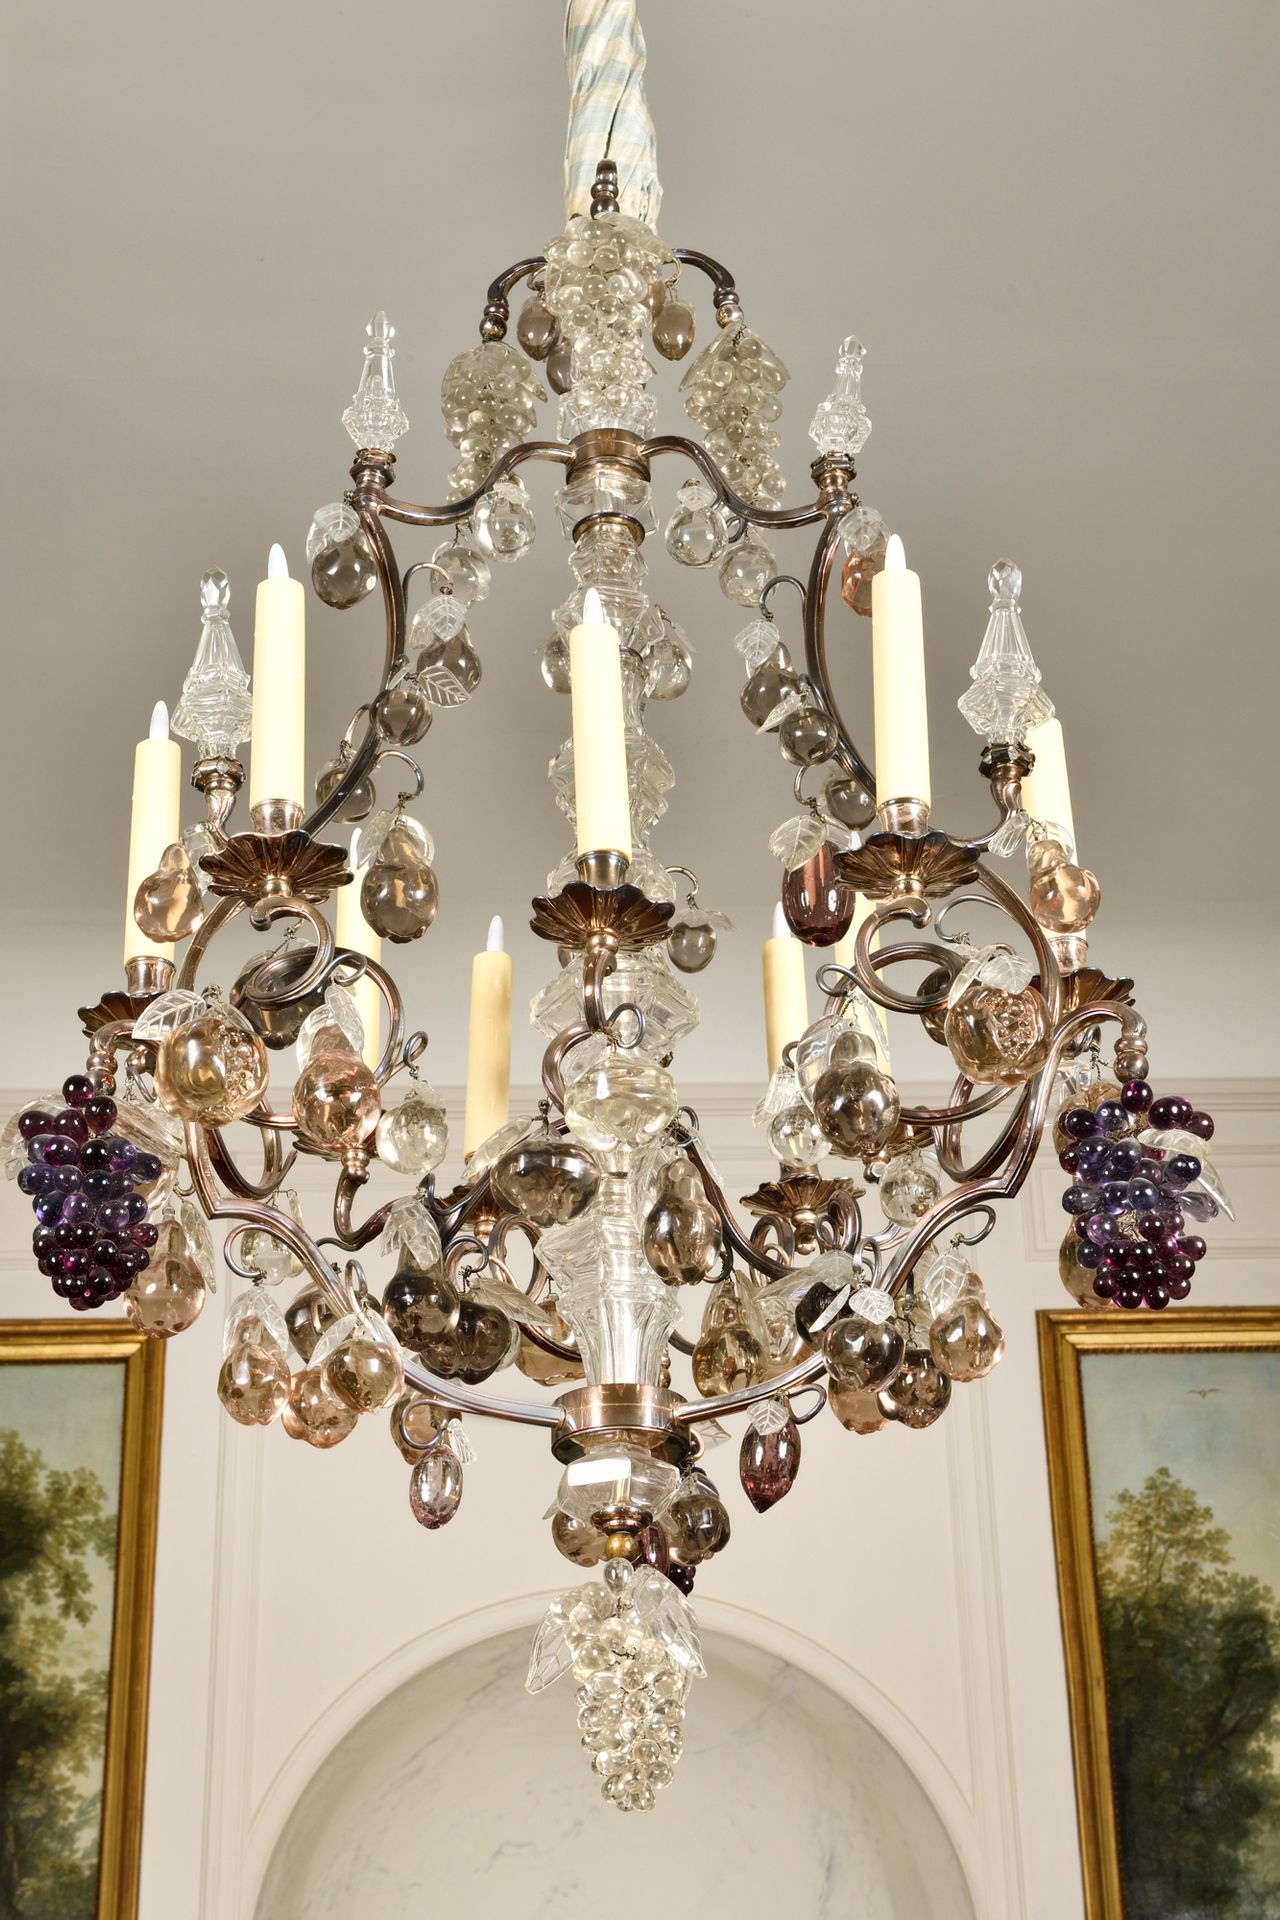 Null 一盏镀银的青铜吊灯，九根灯枝在有色玻璃上装饰着葡萄、匕首和水果。电动安装。路易十五风格。高：105厘米（不含链条），长：60厘米